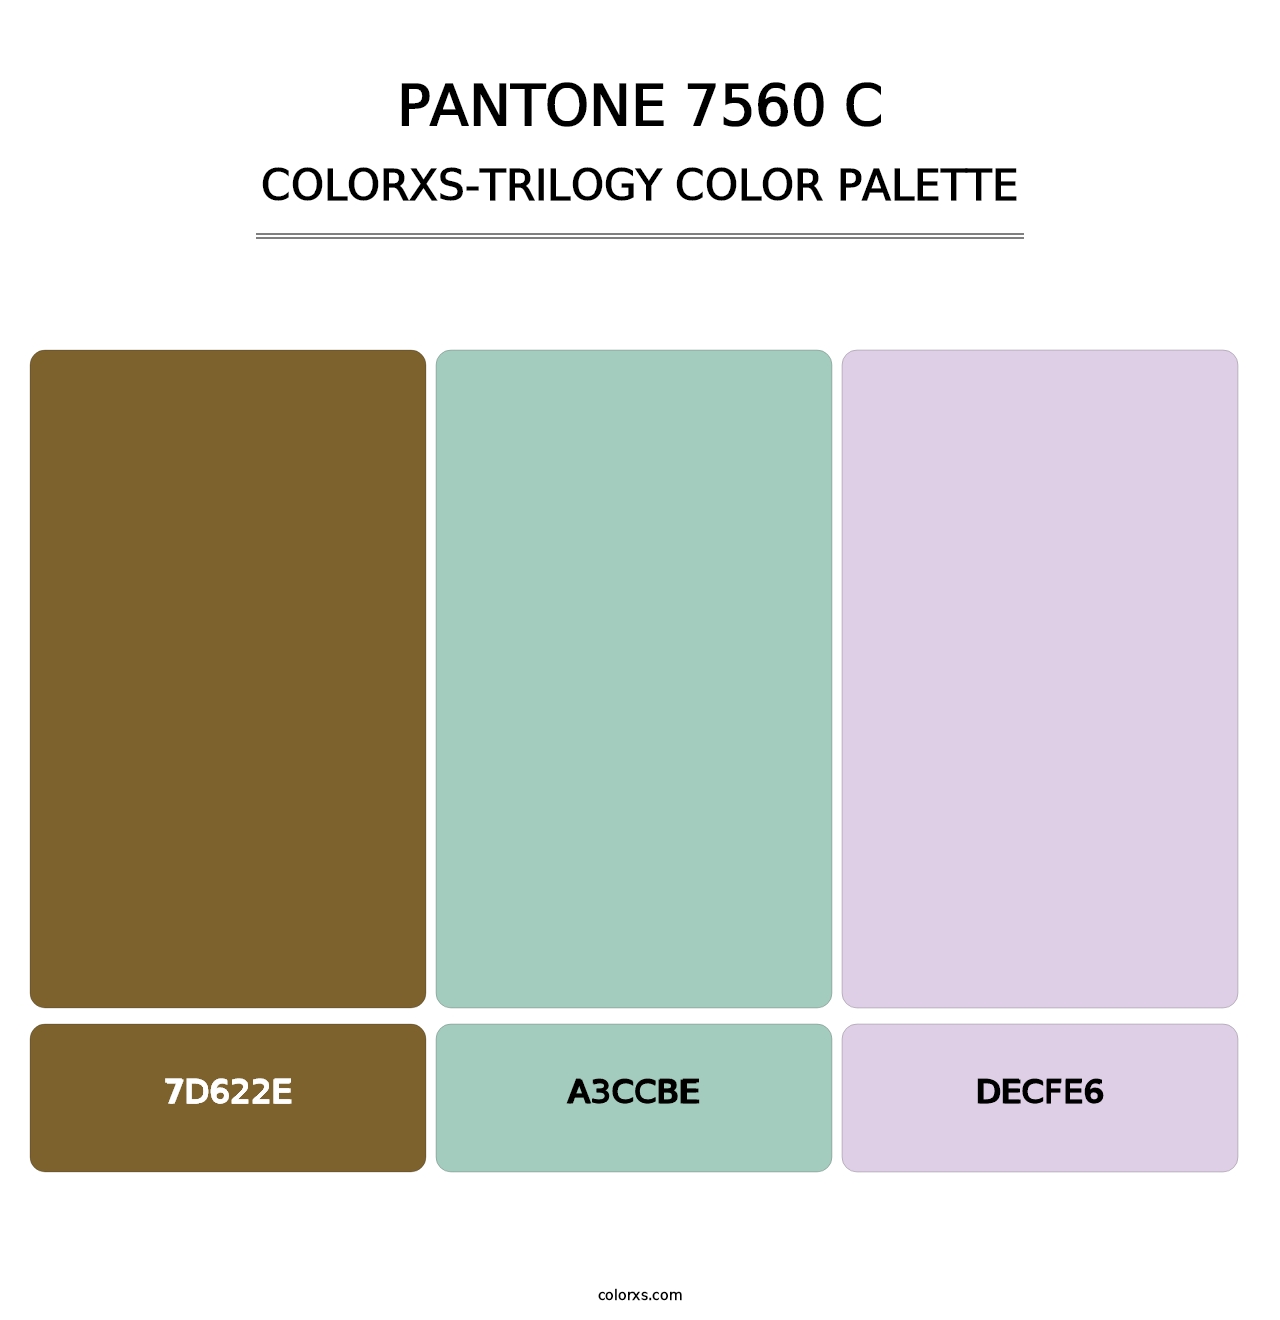 PANTONE 7560 C - Colorxs Trilogy Palette